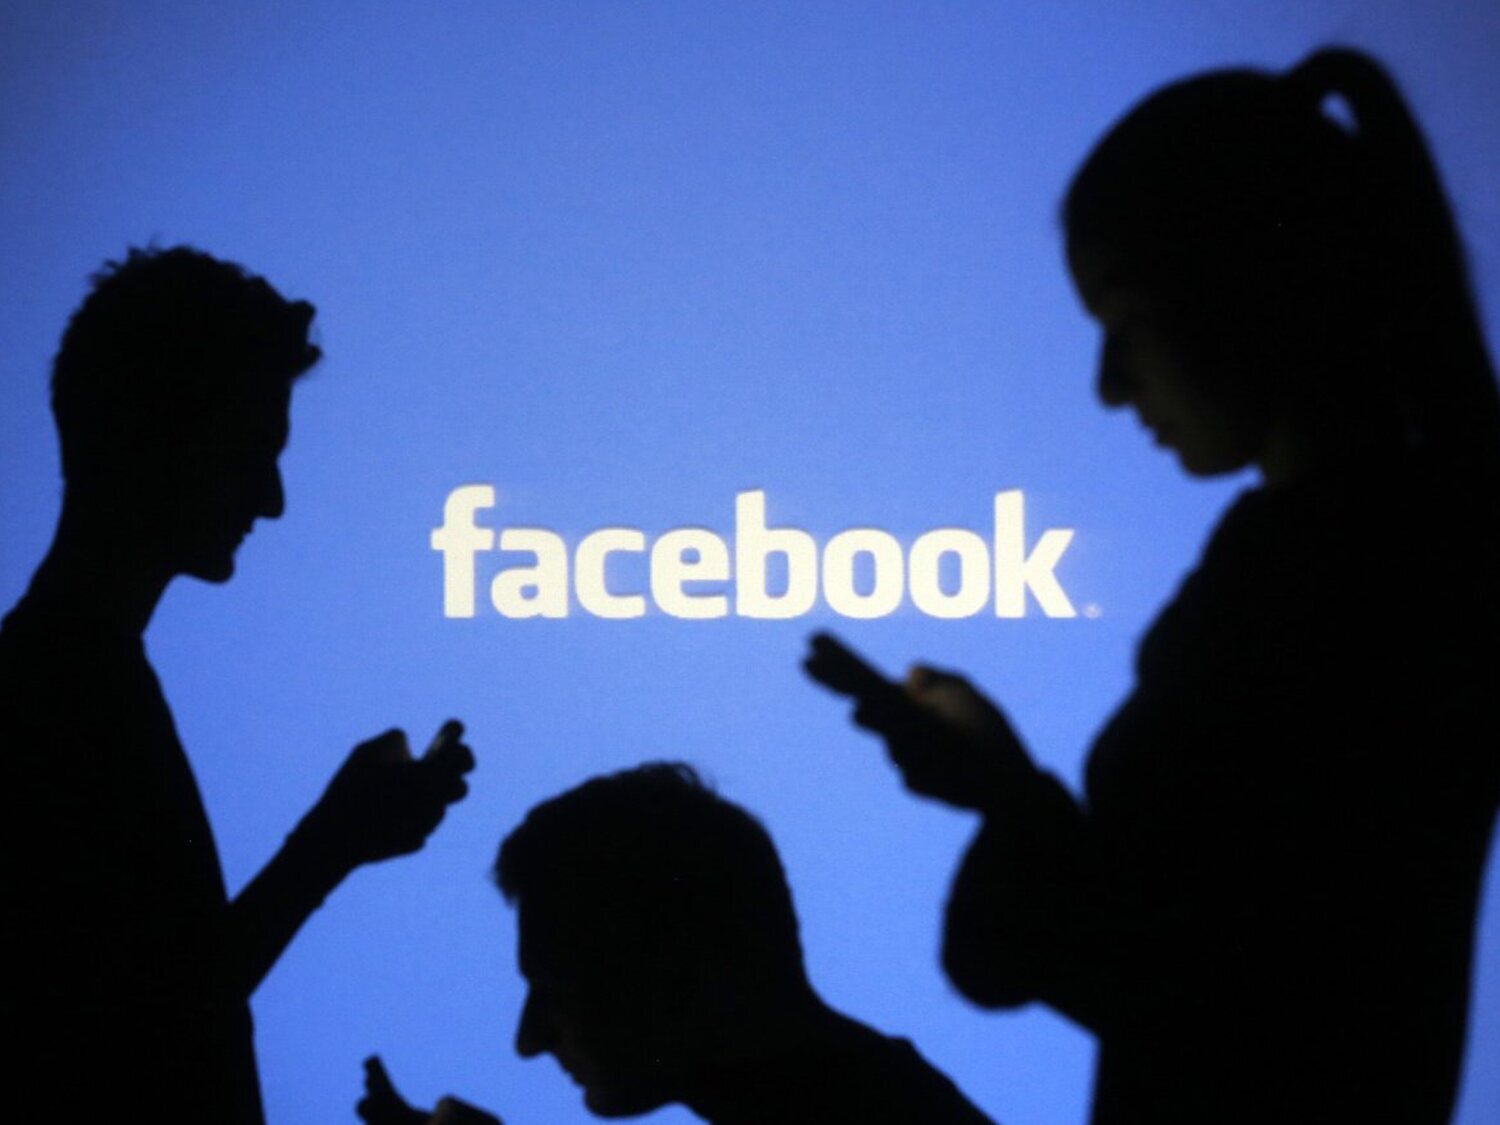 Facebook va a cambiar de nombre para lanzar su "metaverso"